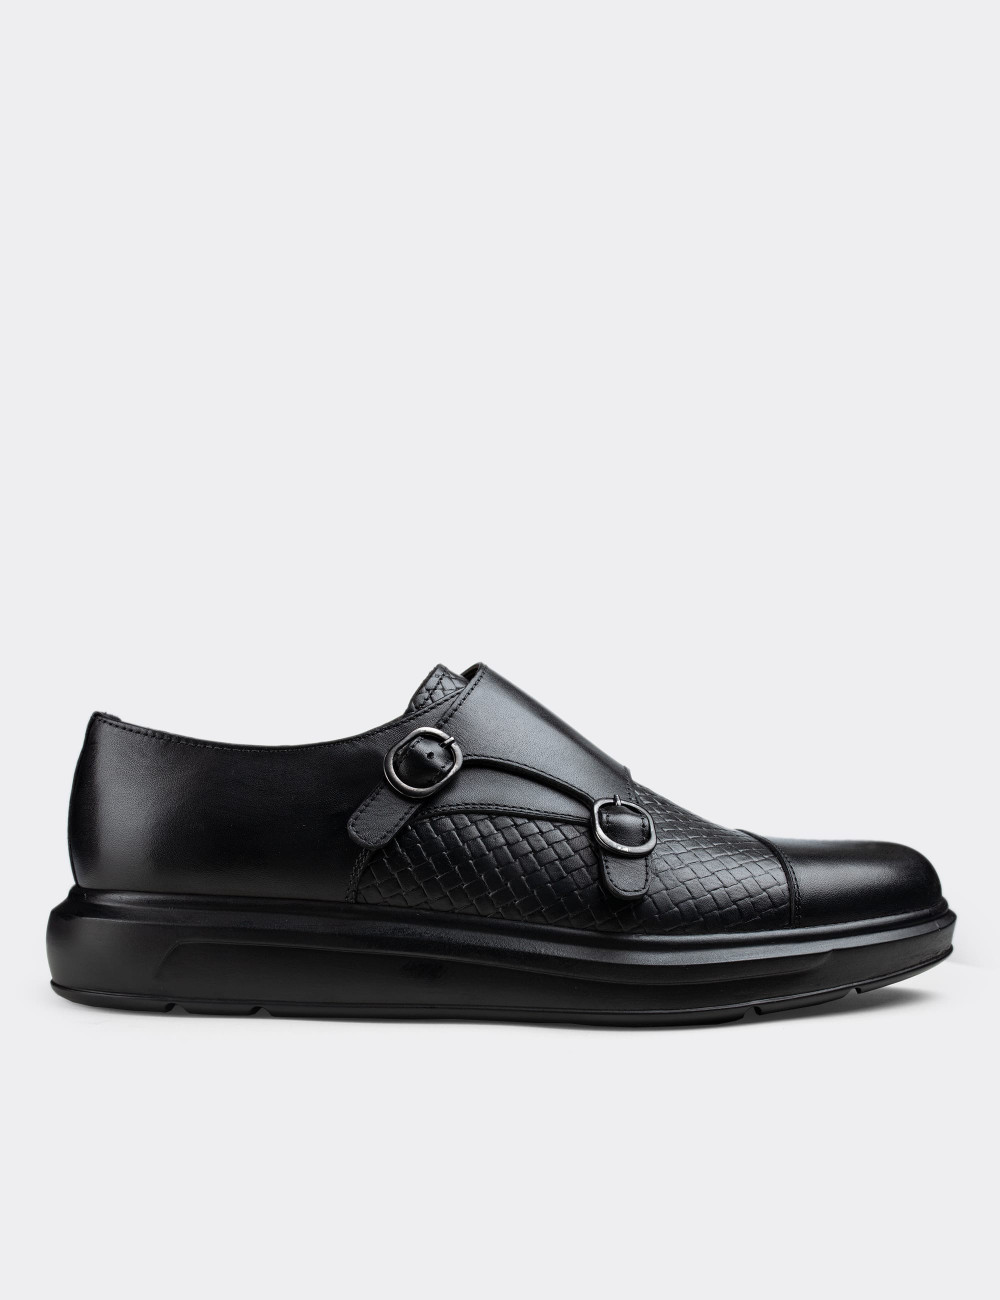 Hakiki Deri Siyah Çift Tokalı Comfort Günlük Erkek Ayakkabı - 01838MSYHP02